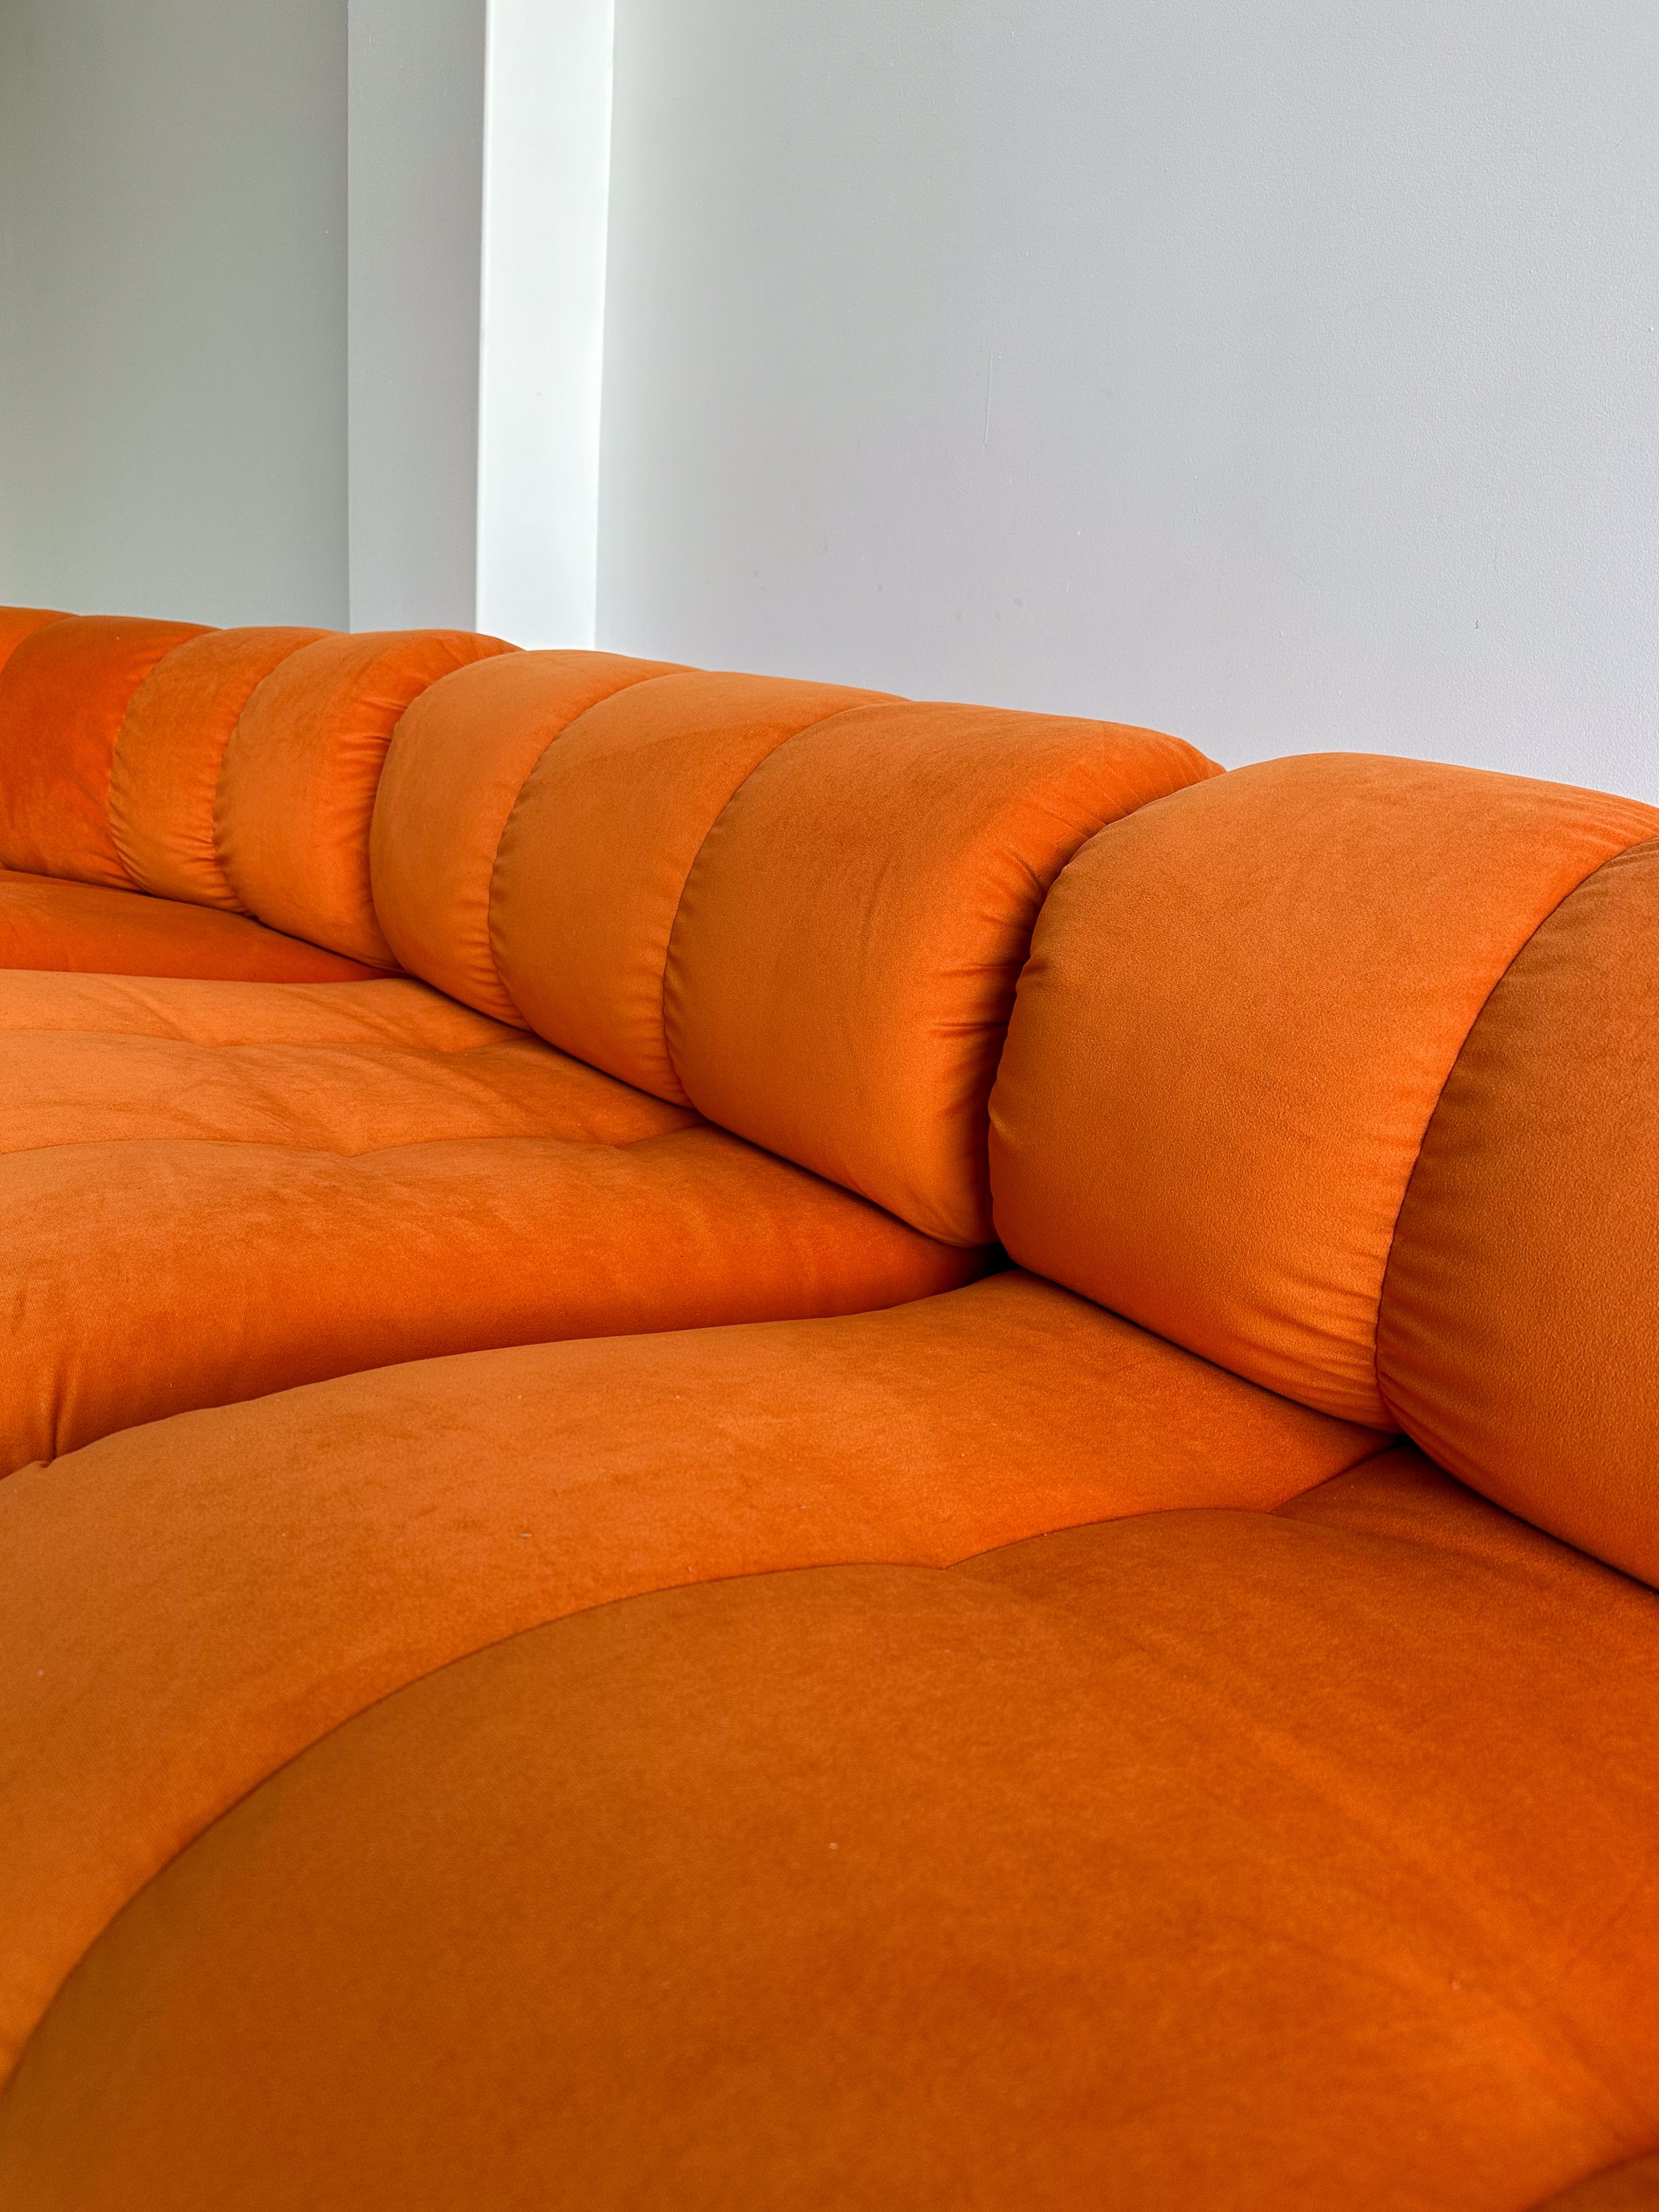 1970s orange couch